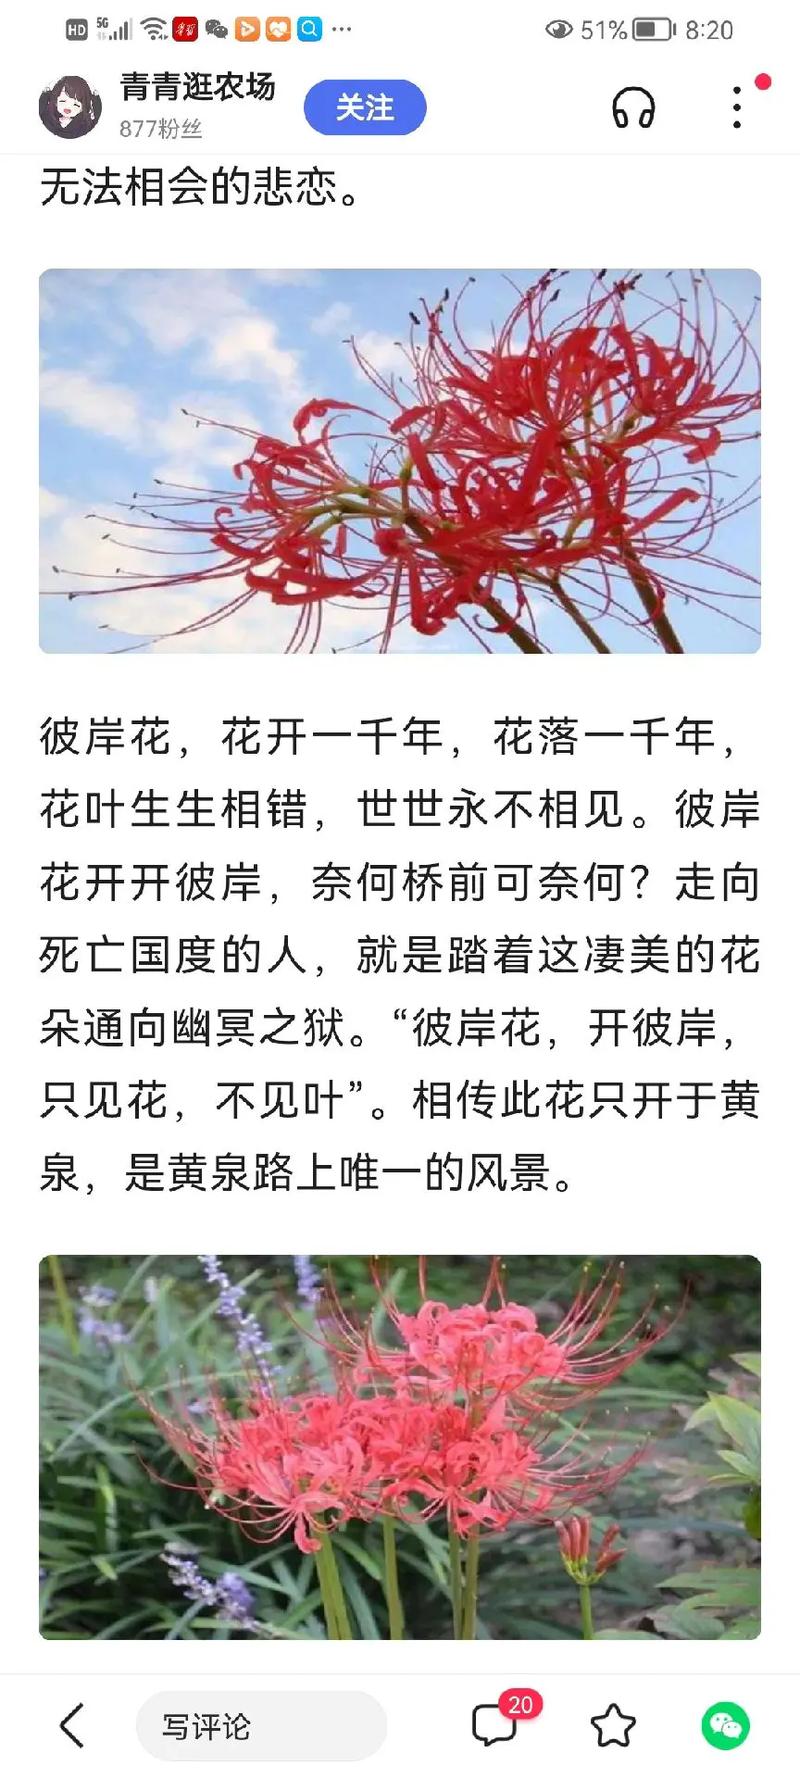 学校的几棵彼岸花开了.在中国,彼岸花象征着美丽动人,优美纯洁 - 抖音